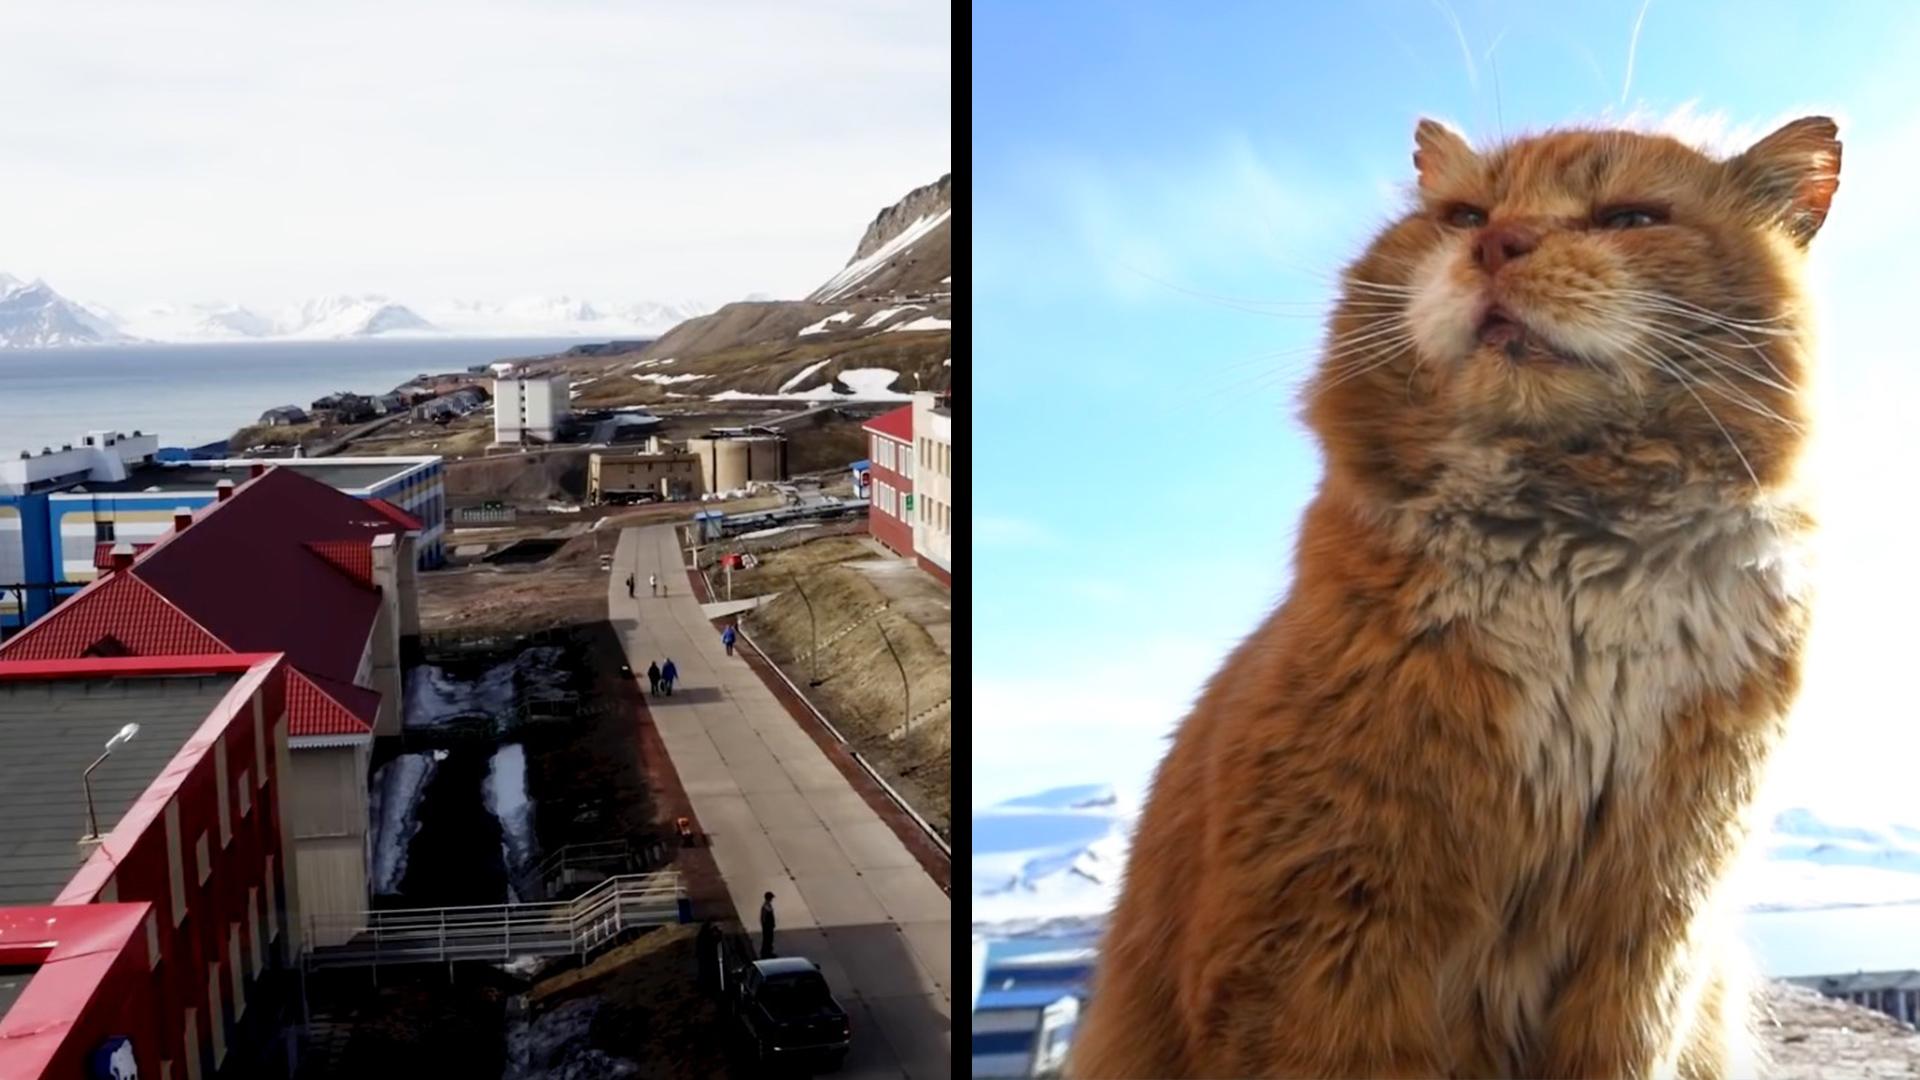 bergen norway cat island tour